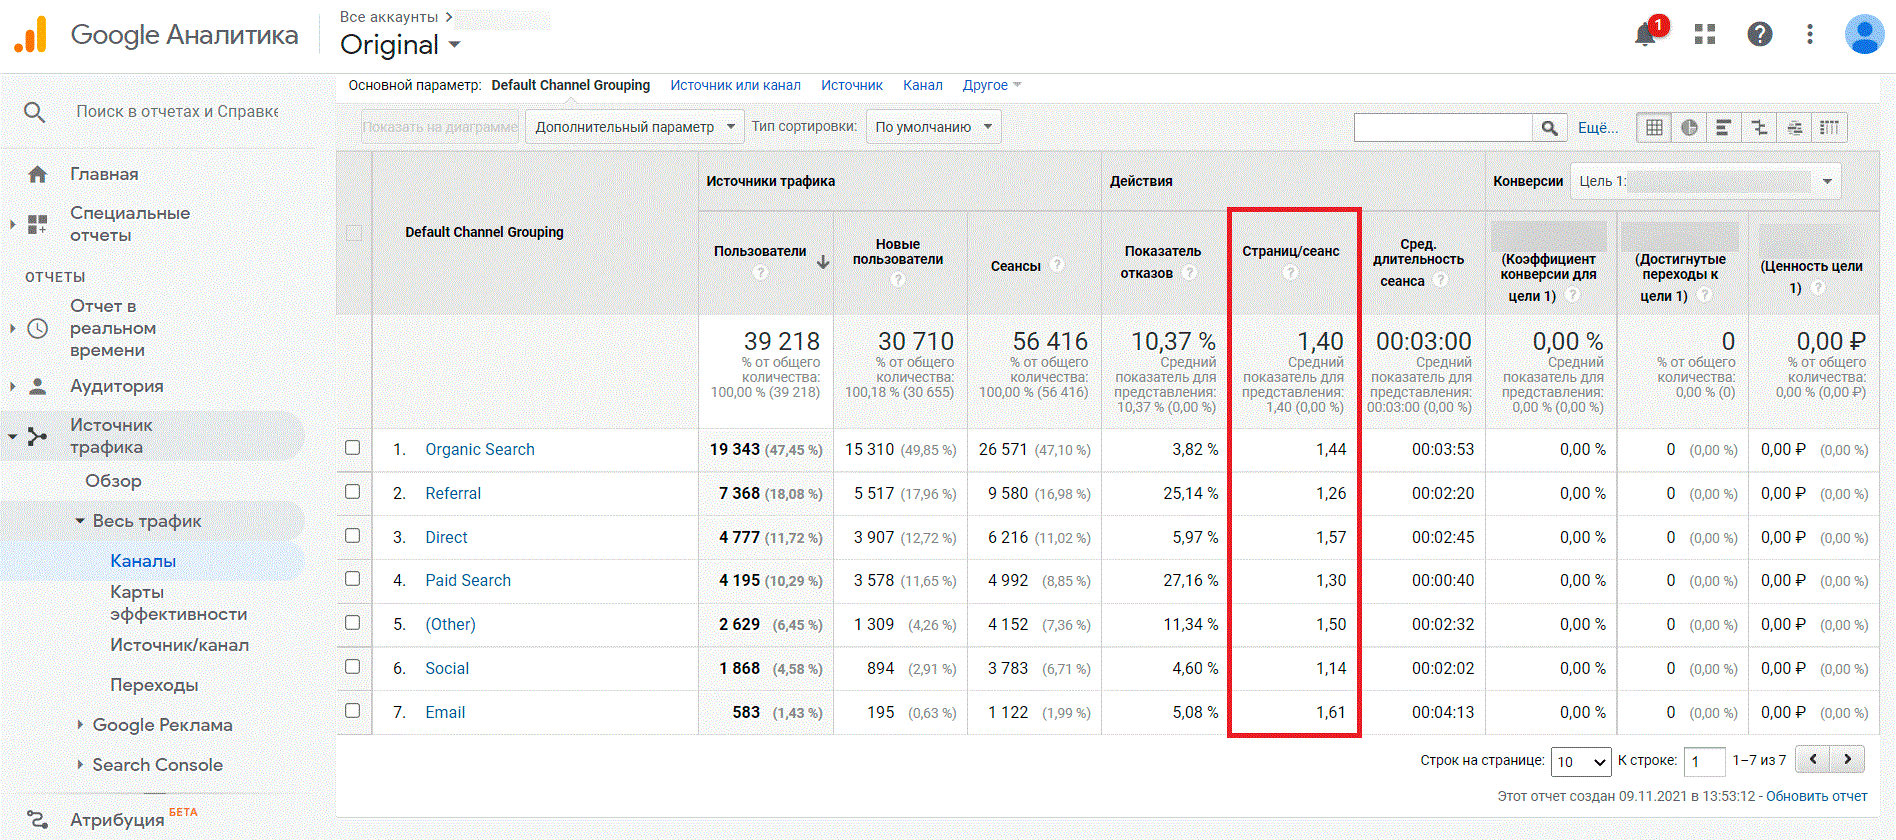 Как посмотреть количество страниц за сеанс в Google Analytics